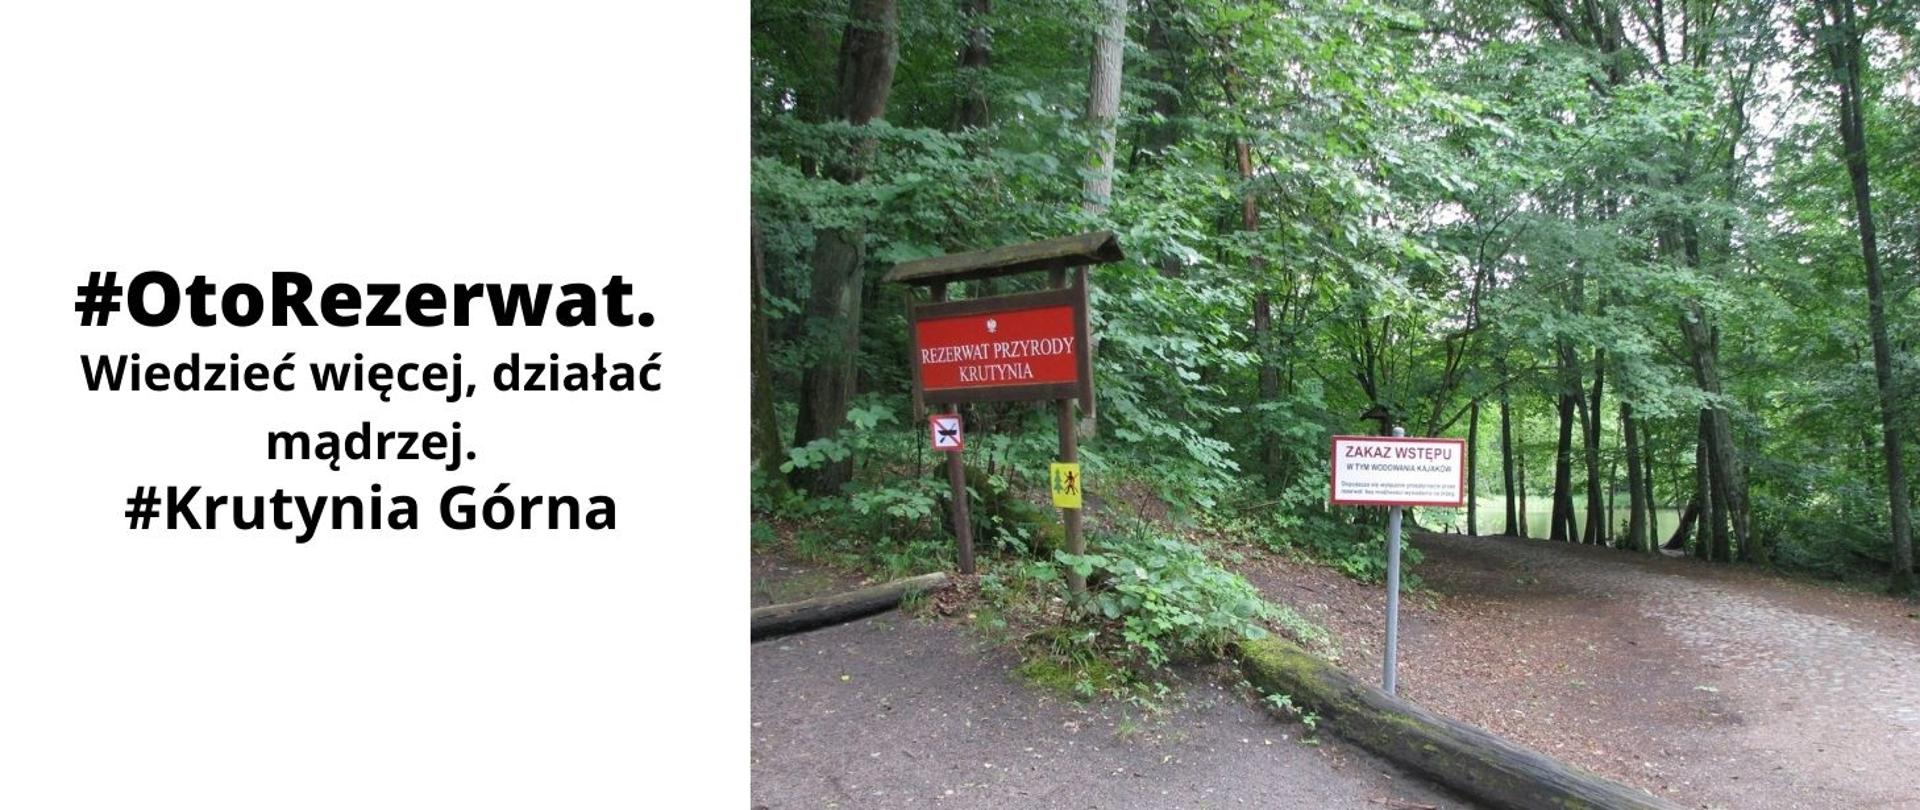 Na zdjęciu jest rezerwat przyrody Krutynia Górna. Na pierwszym planie widoczne są tablice informacyjne. Po lewej stronie czerwona tablica z napisem rezerwat przyrody Krutynia. Po prawej biała tablica informująca o zakazie wstępu w tym wodowania kajaków. W tle widać rosnące drzewa.